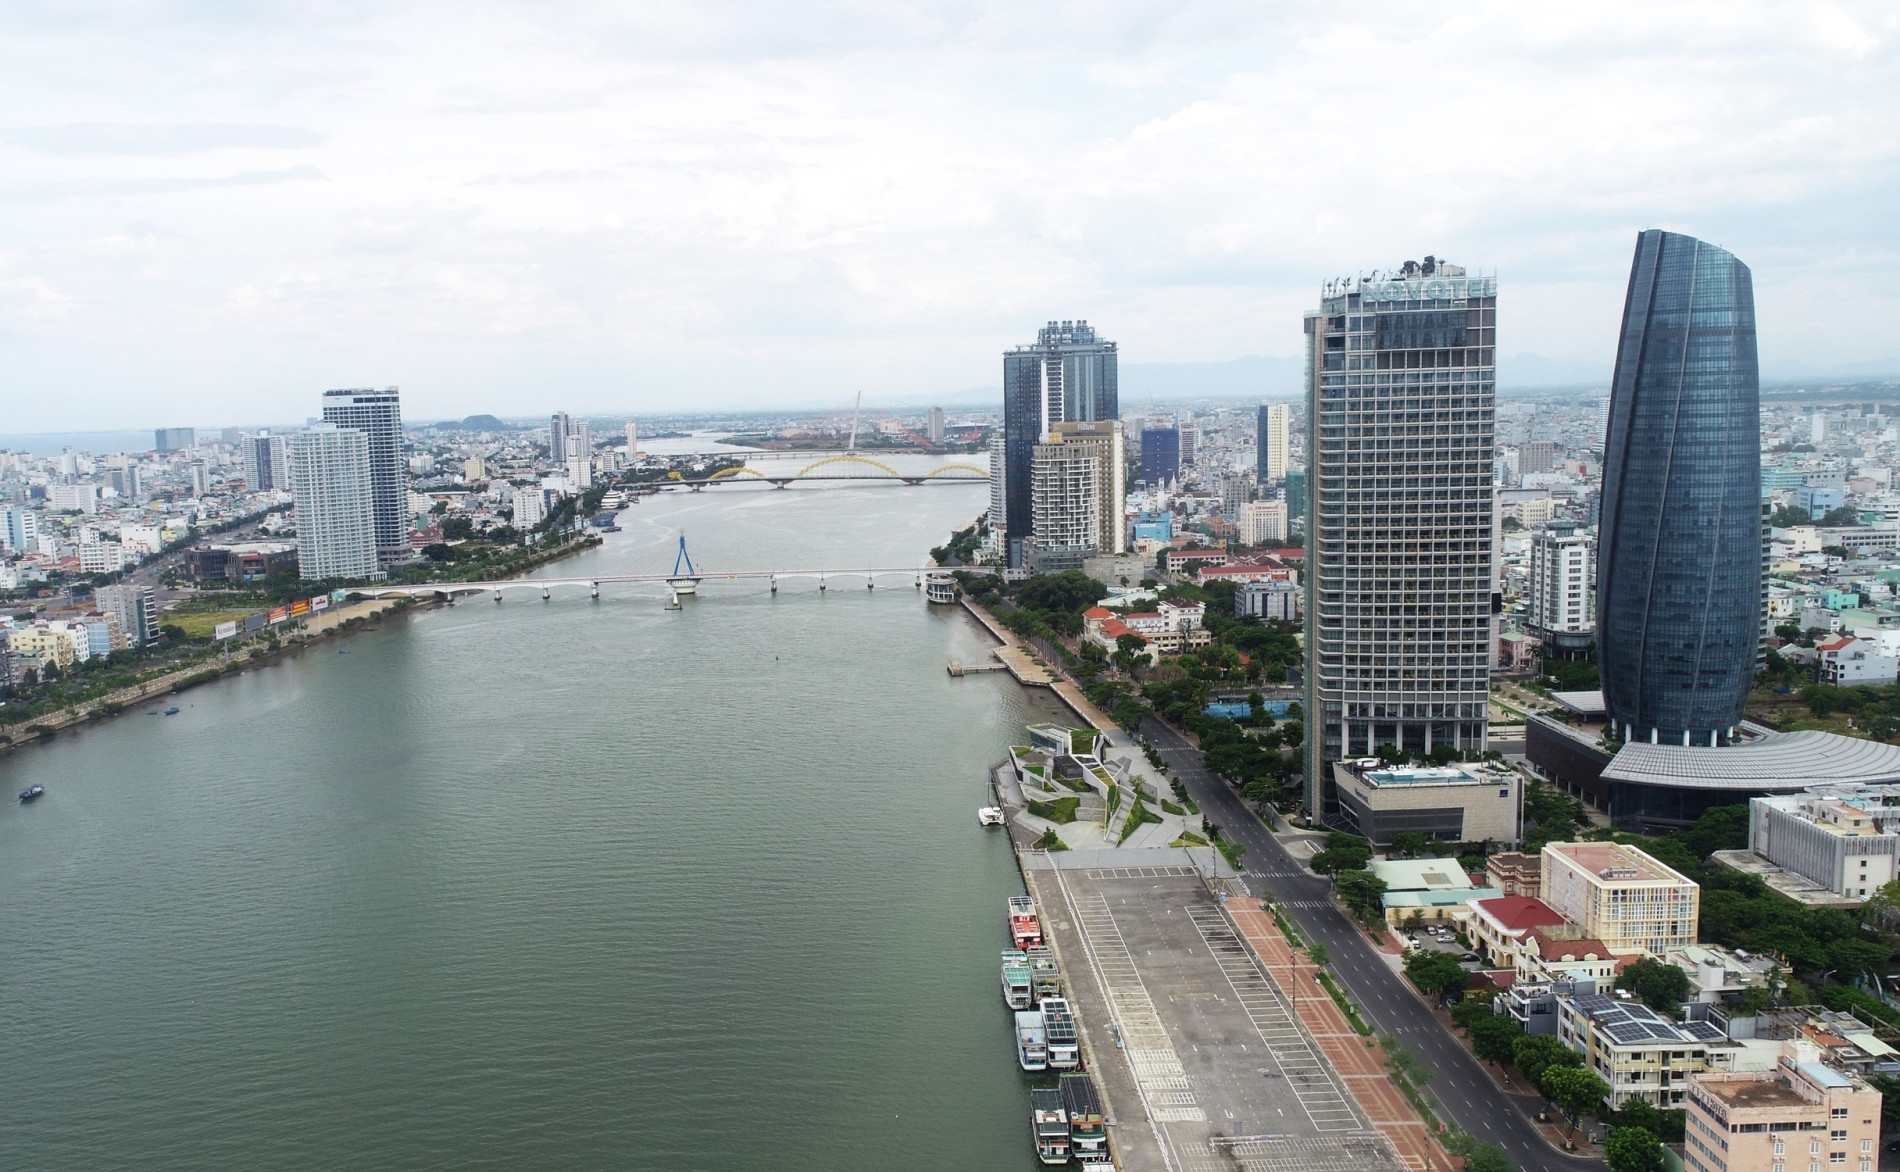 Đà Nẵng: 6 tháng đầu năm 2023, kinh tế chỉ tăng trưởng 3,74%